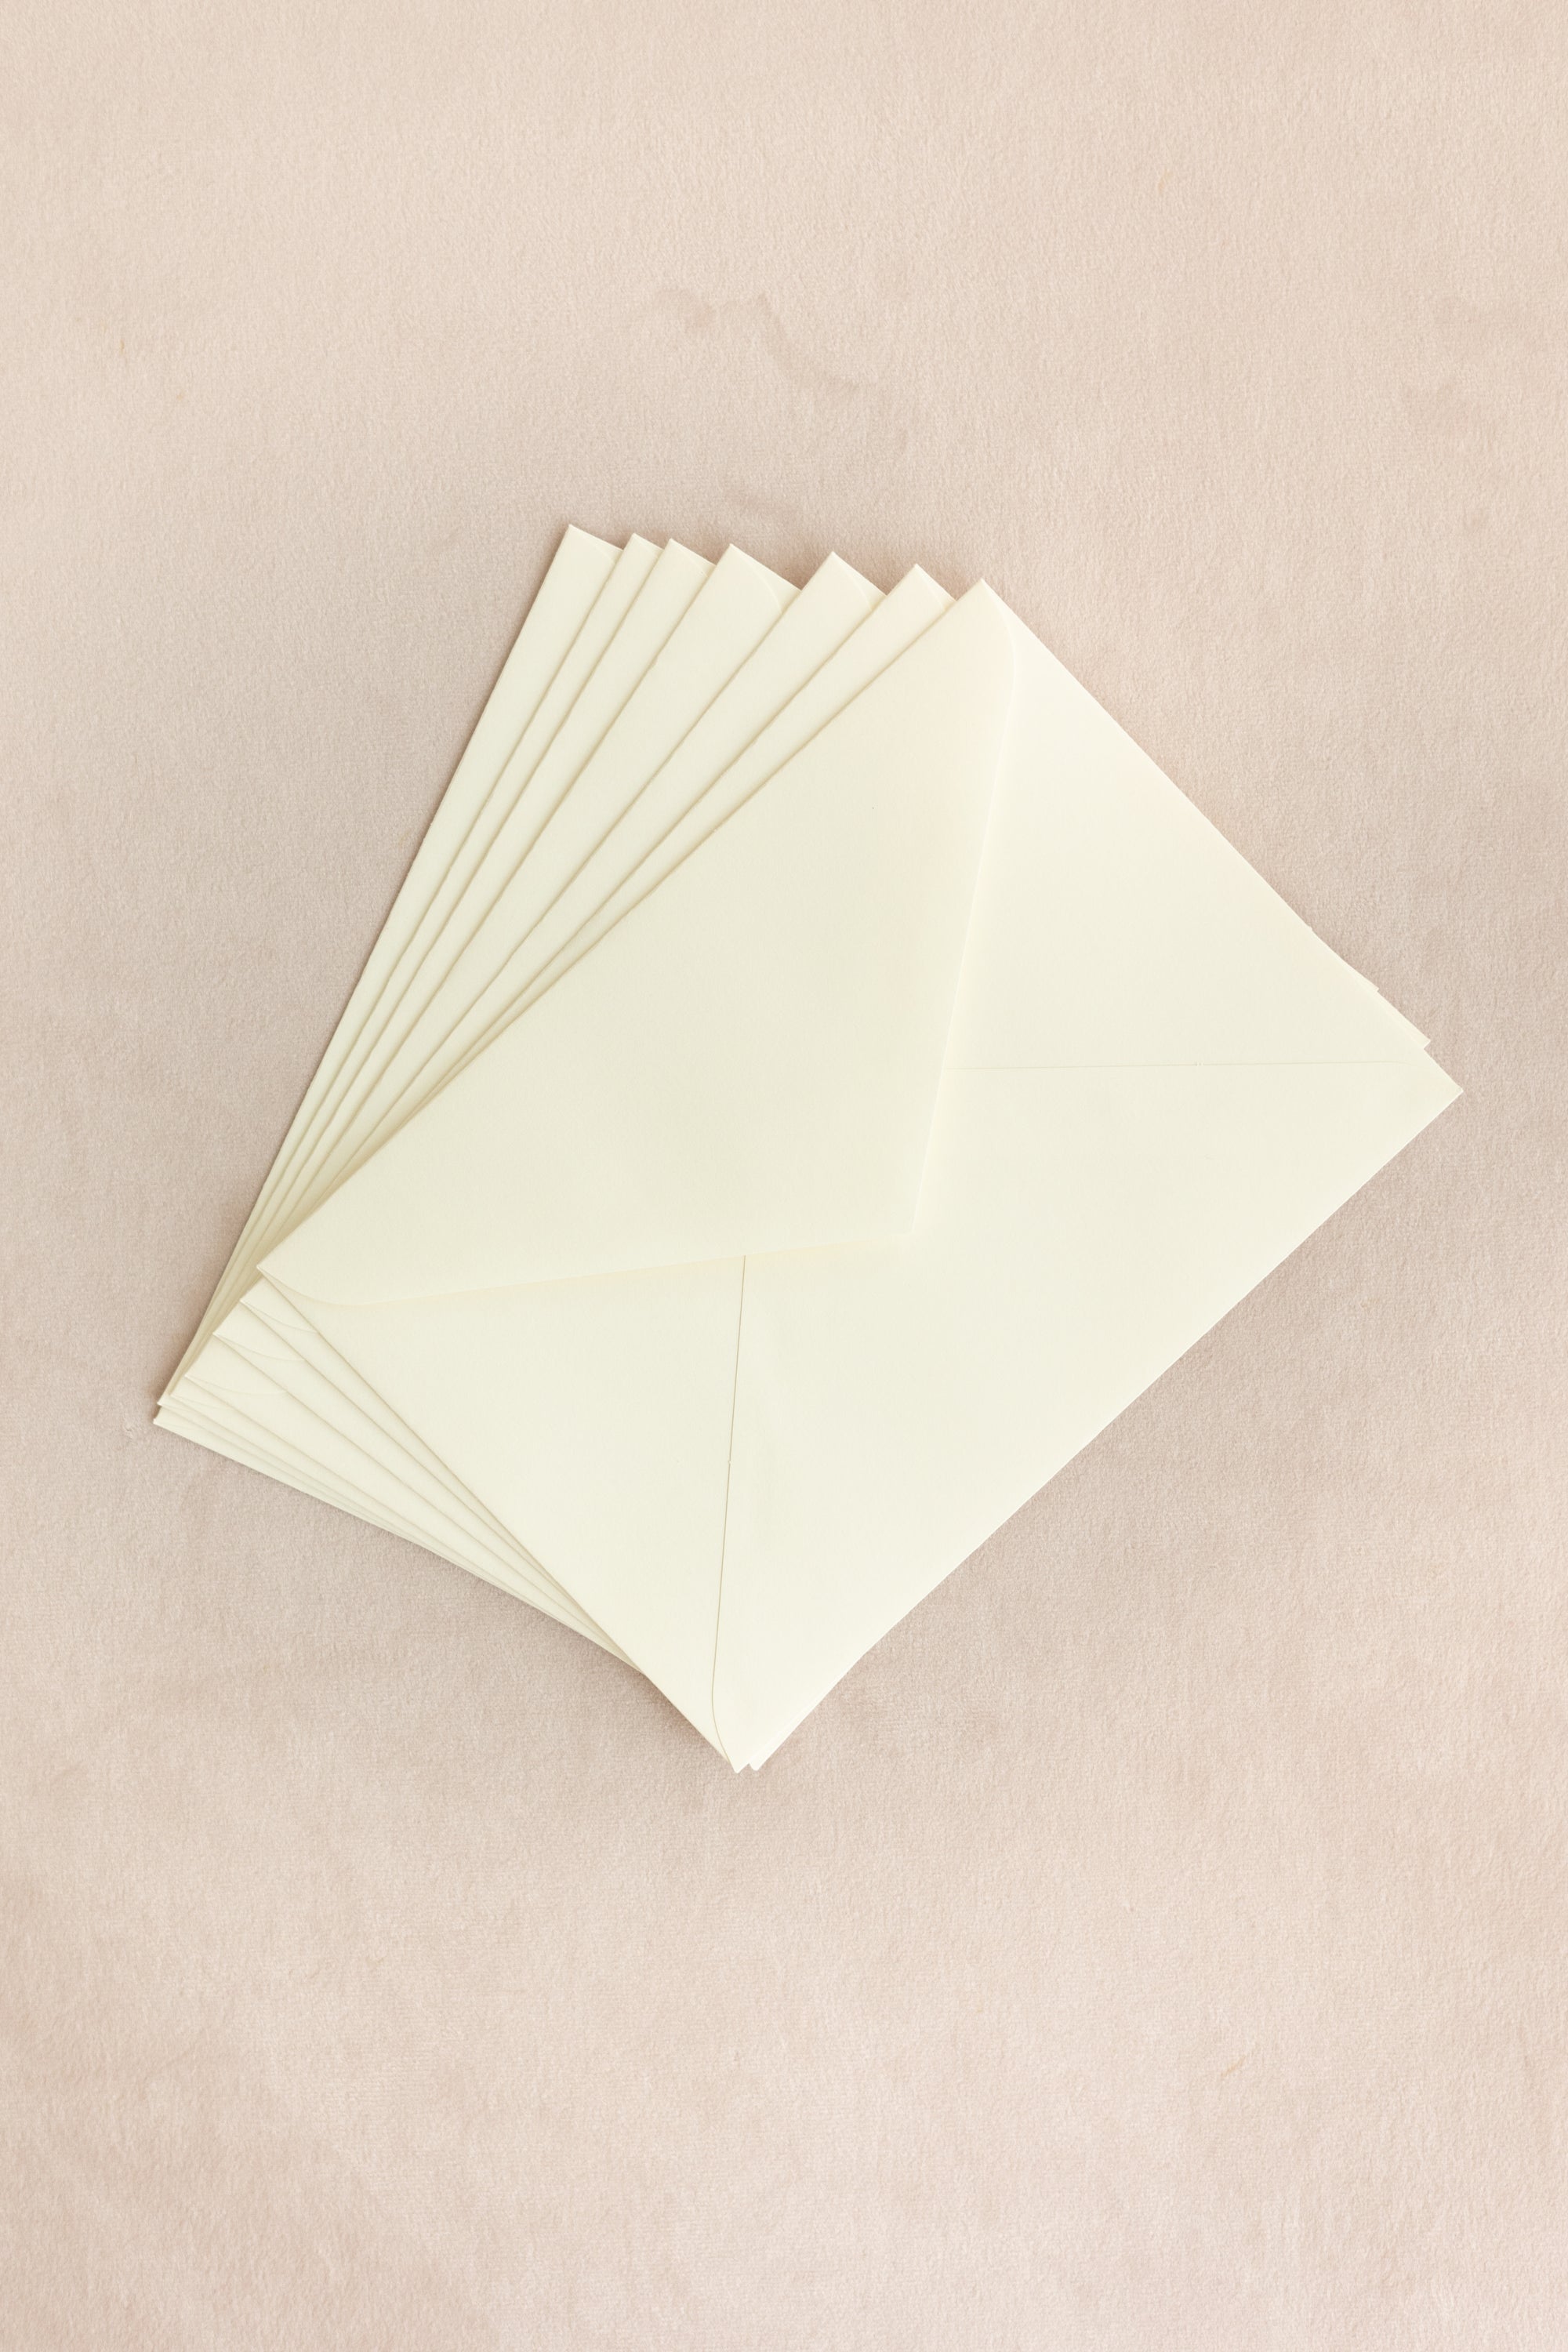 Silk Velvet Greeting Card【Rounded Rectangle】Leaf